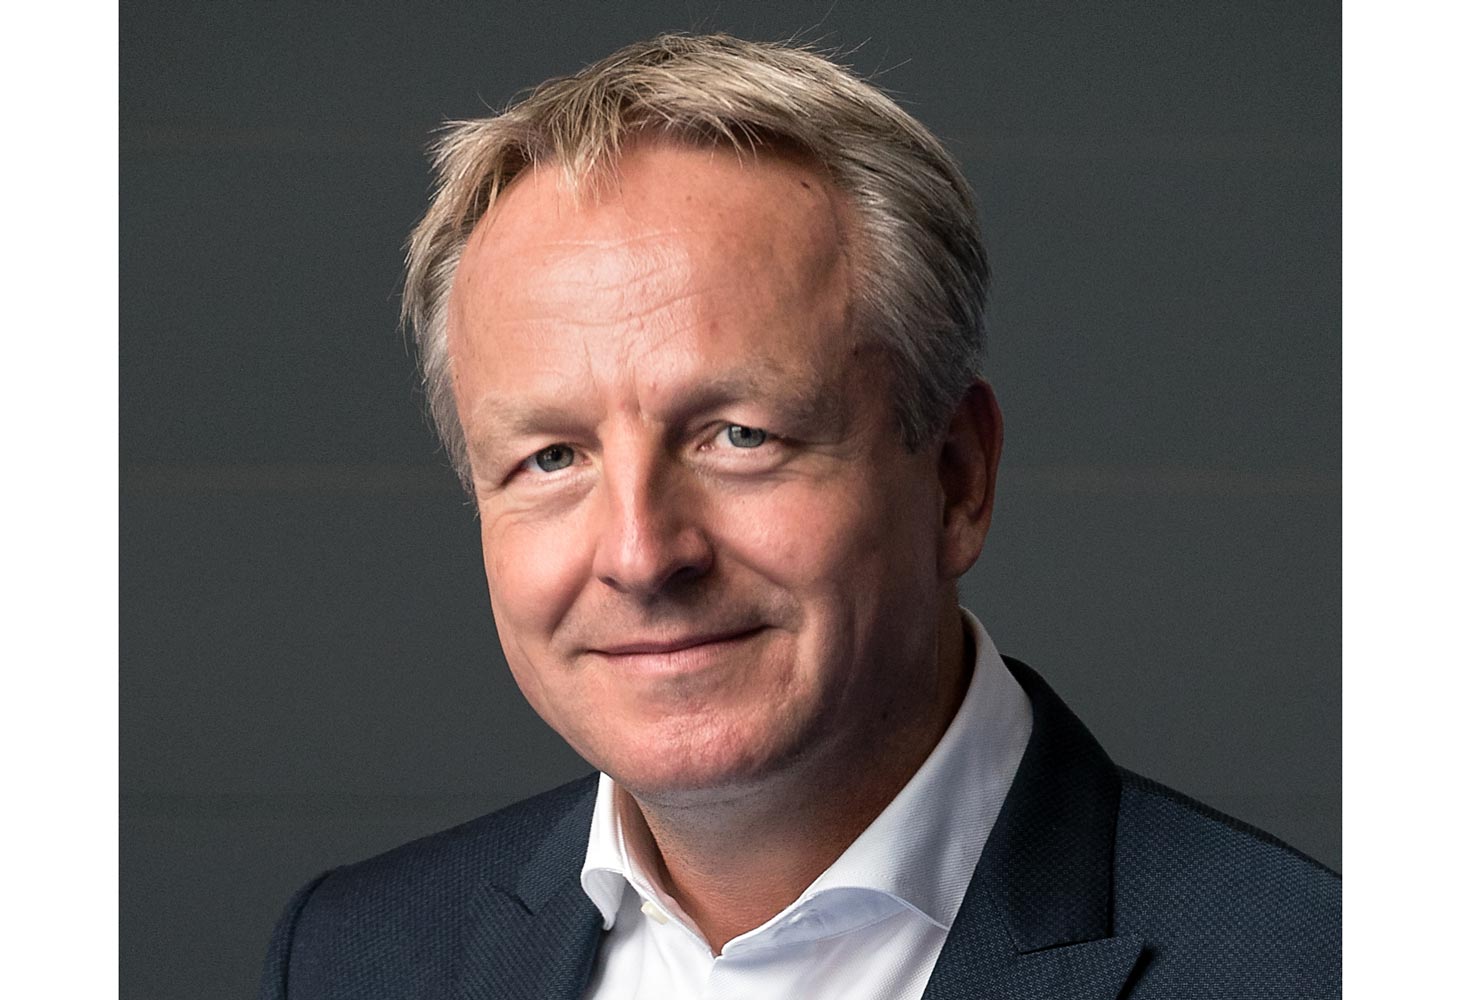 Cepsa appoints Maarten Wetselaar as CEO effective January 2022